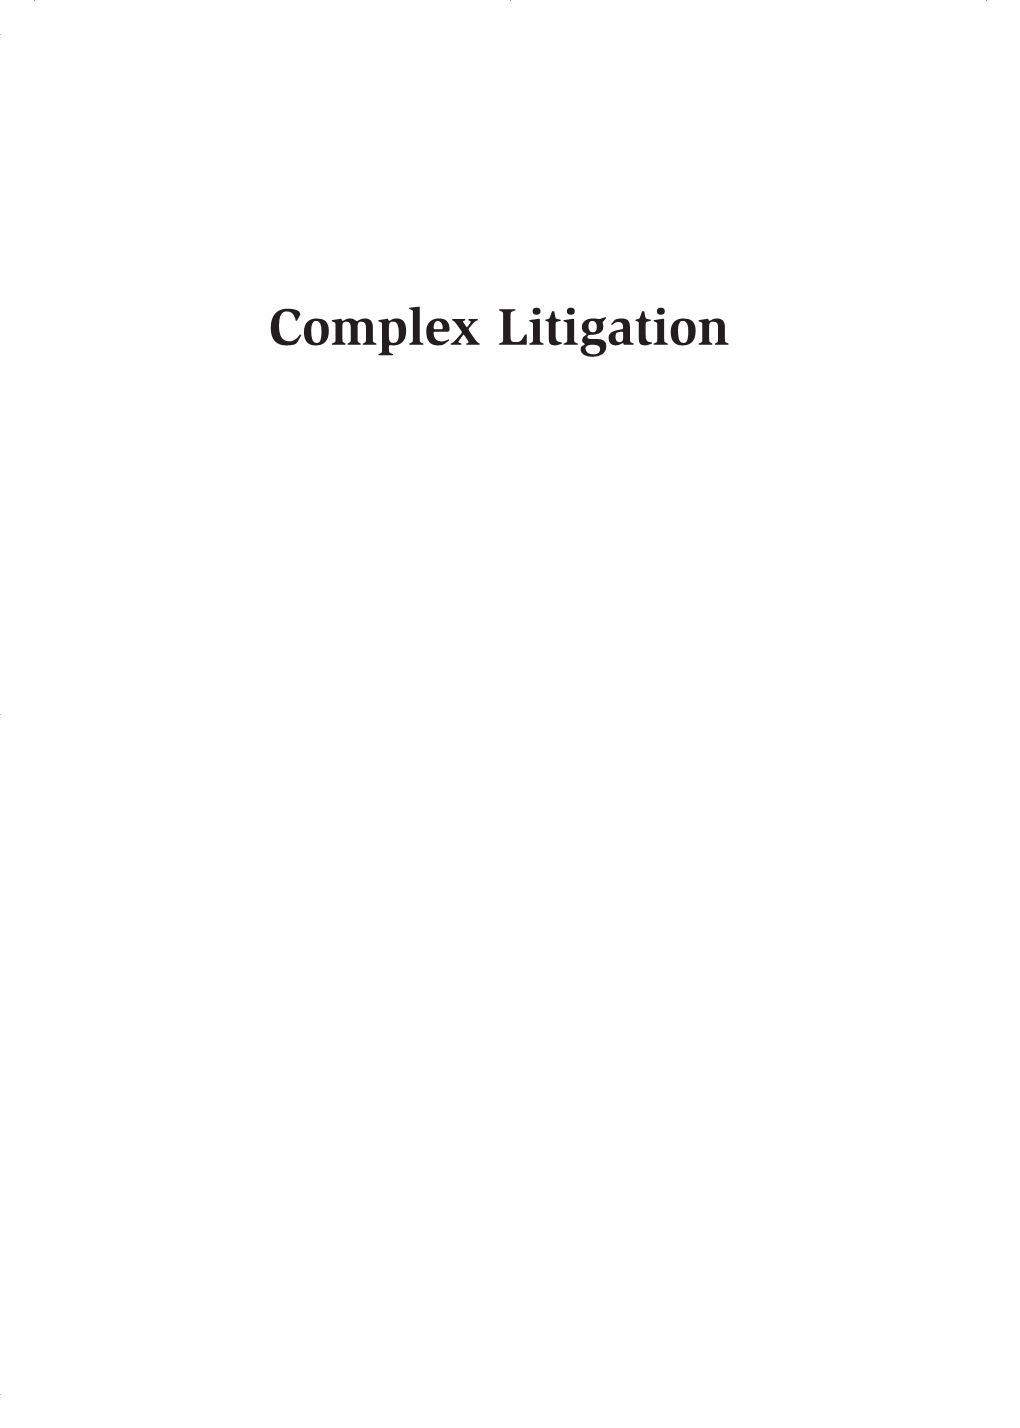 Complex Litigation 00 Johnson Cx4 11/20/08 4:44 PM Page Ii